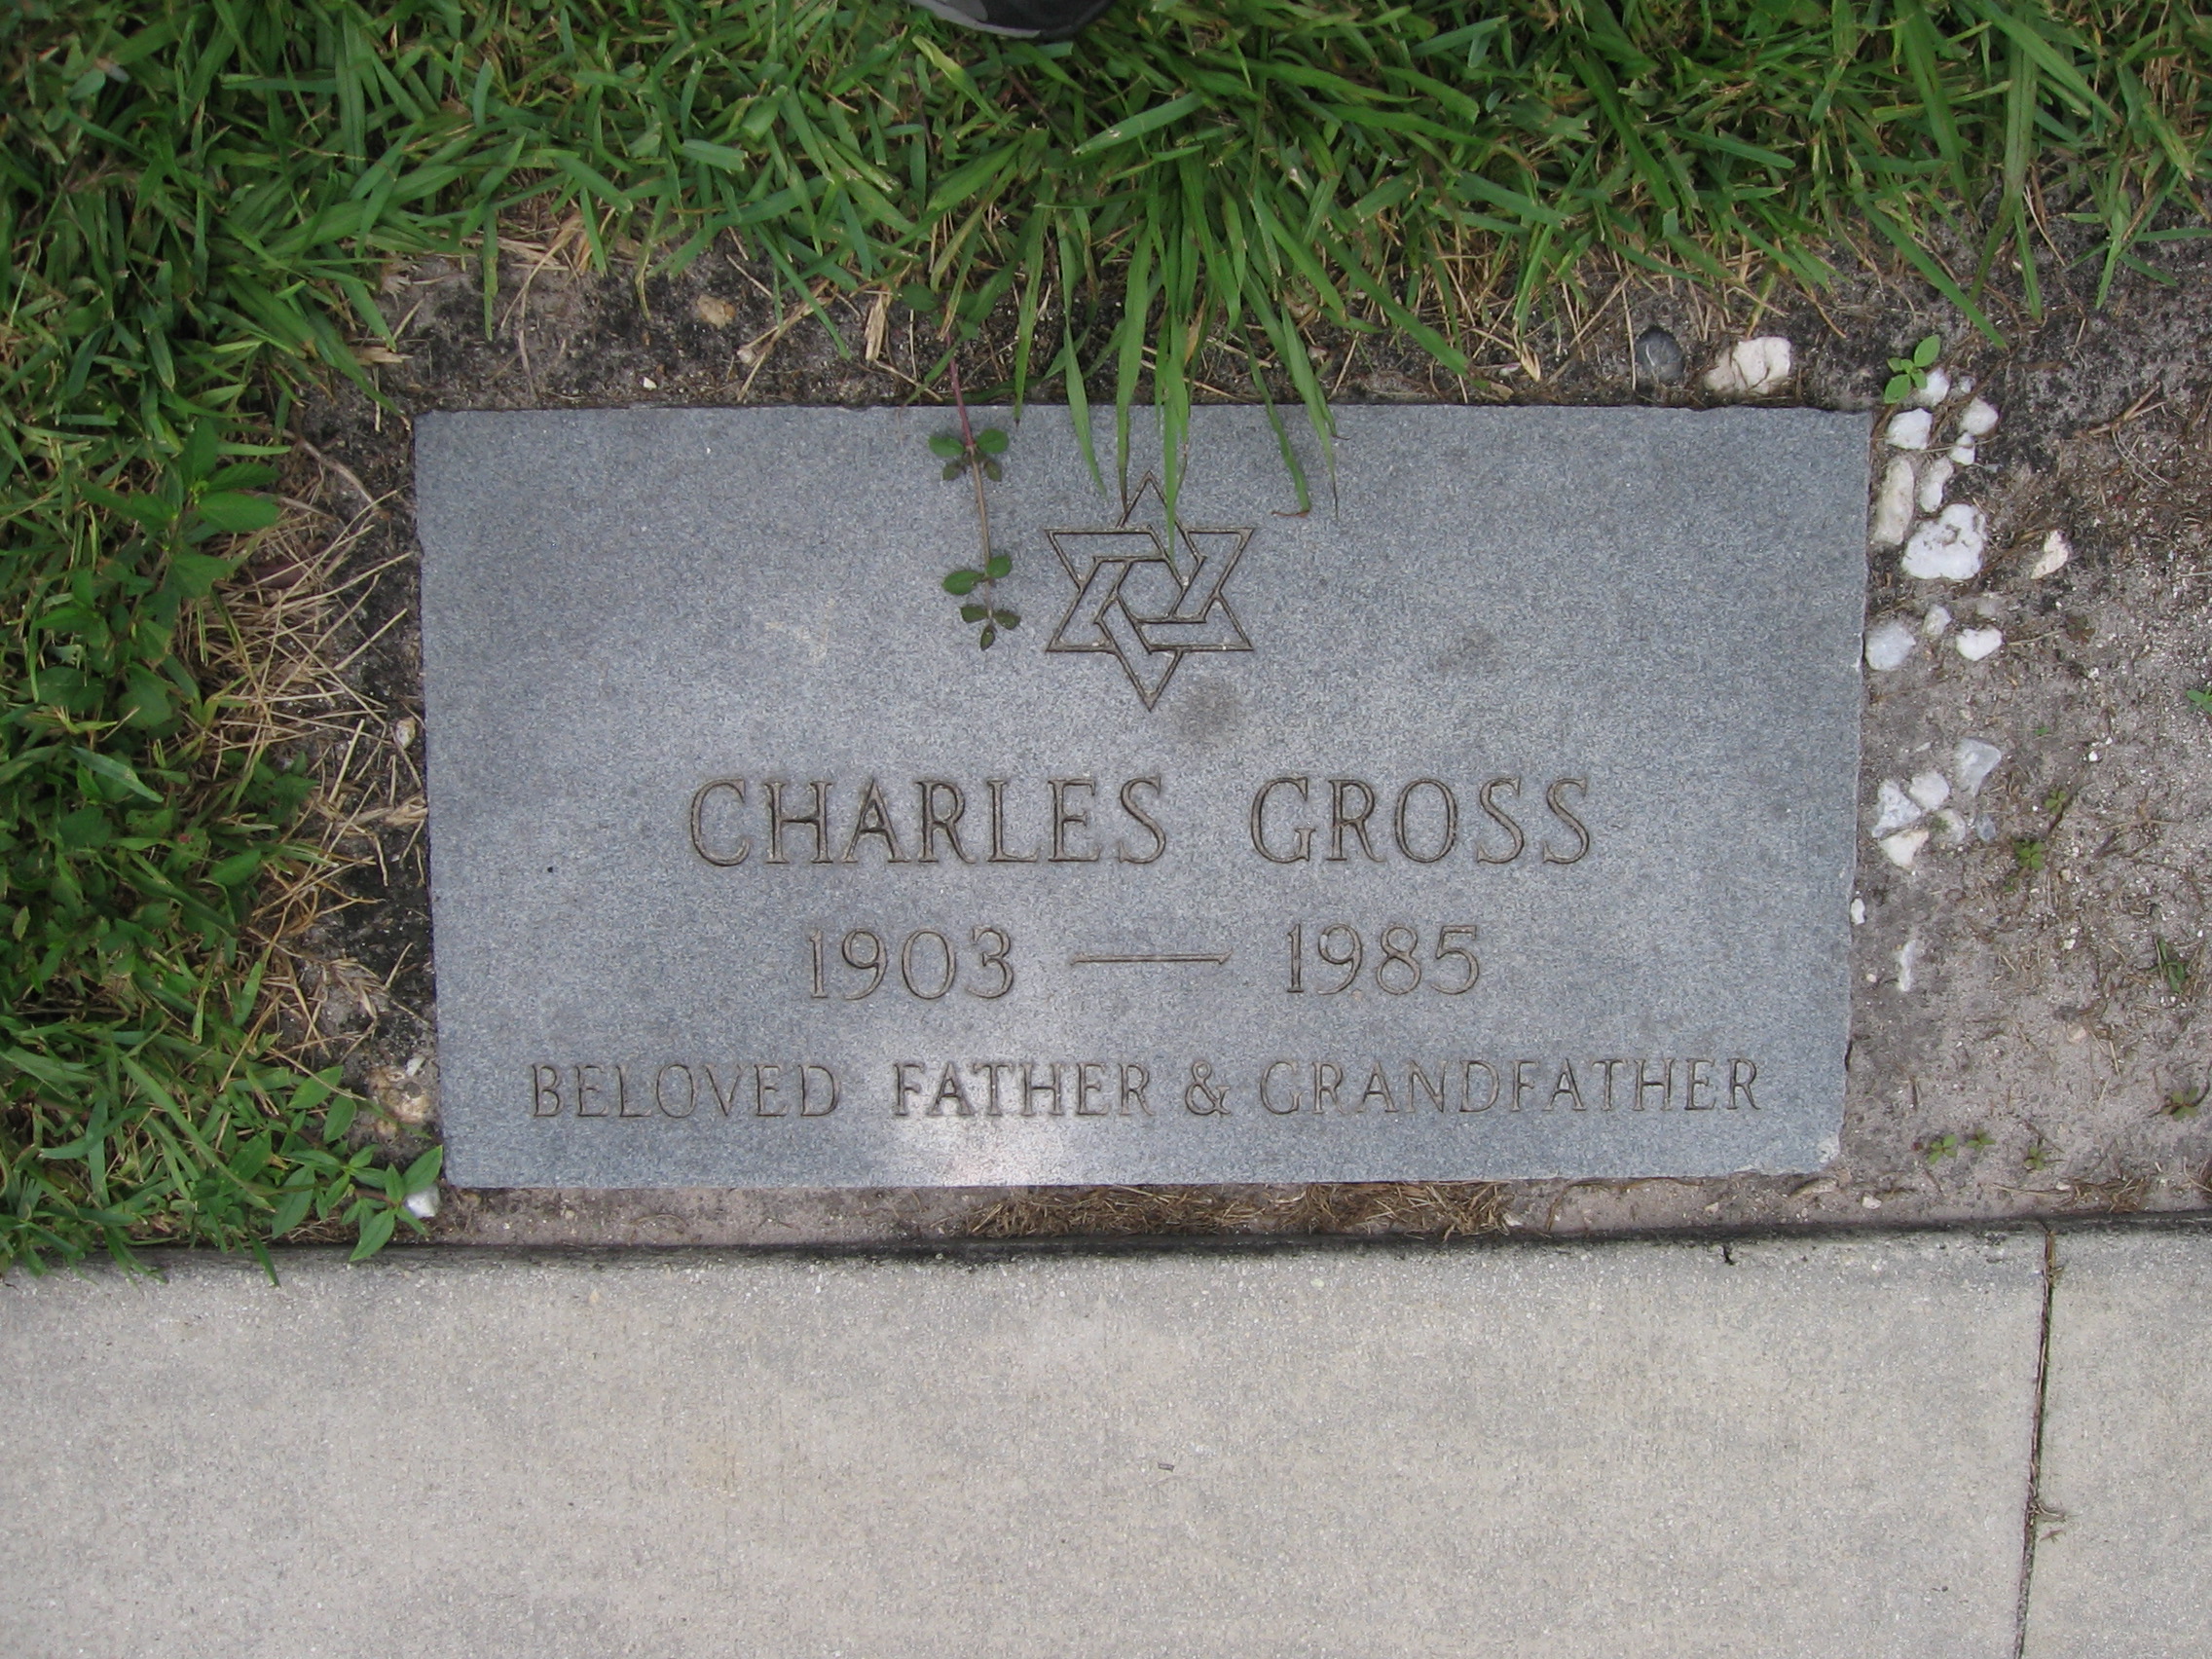 Charles Gross